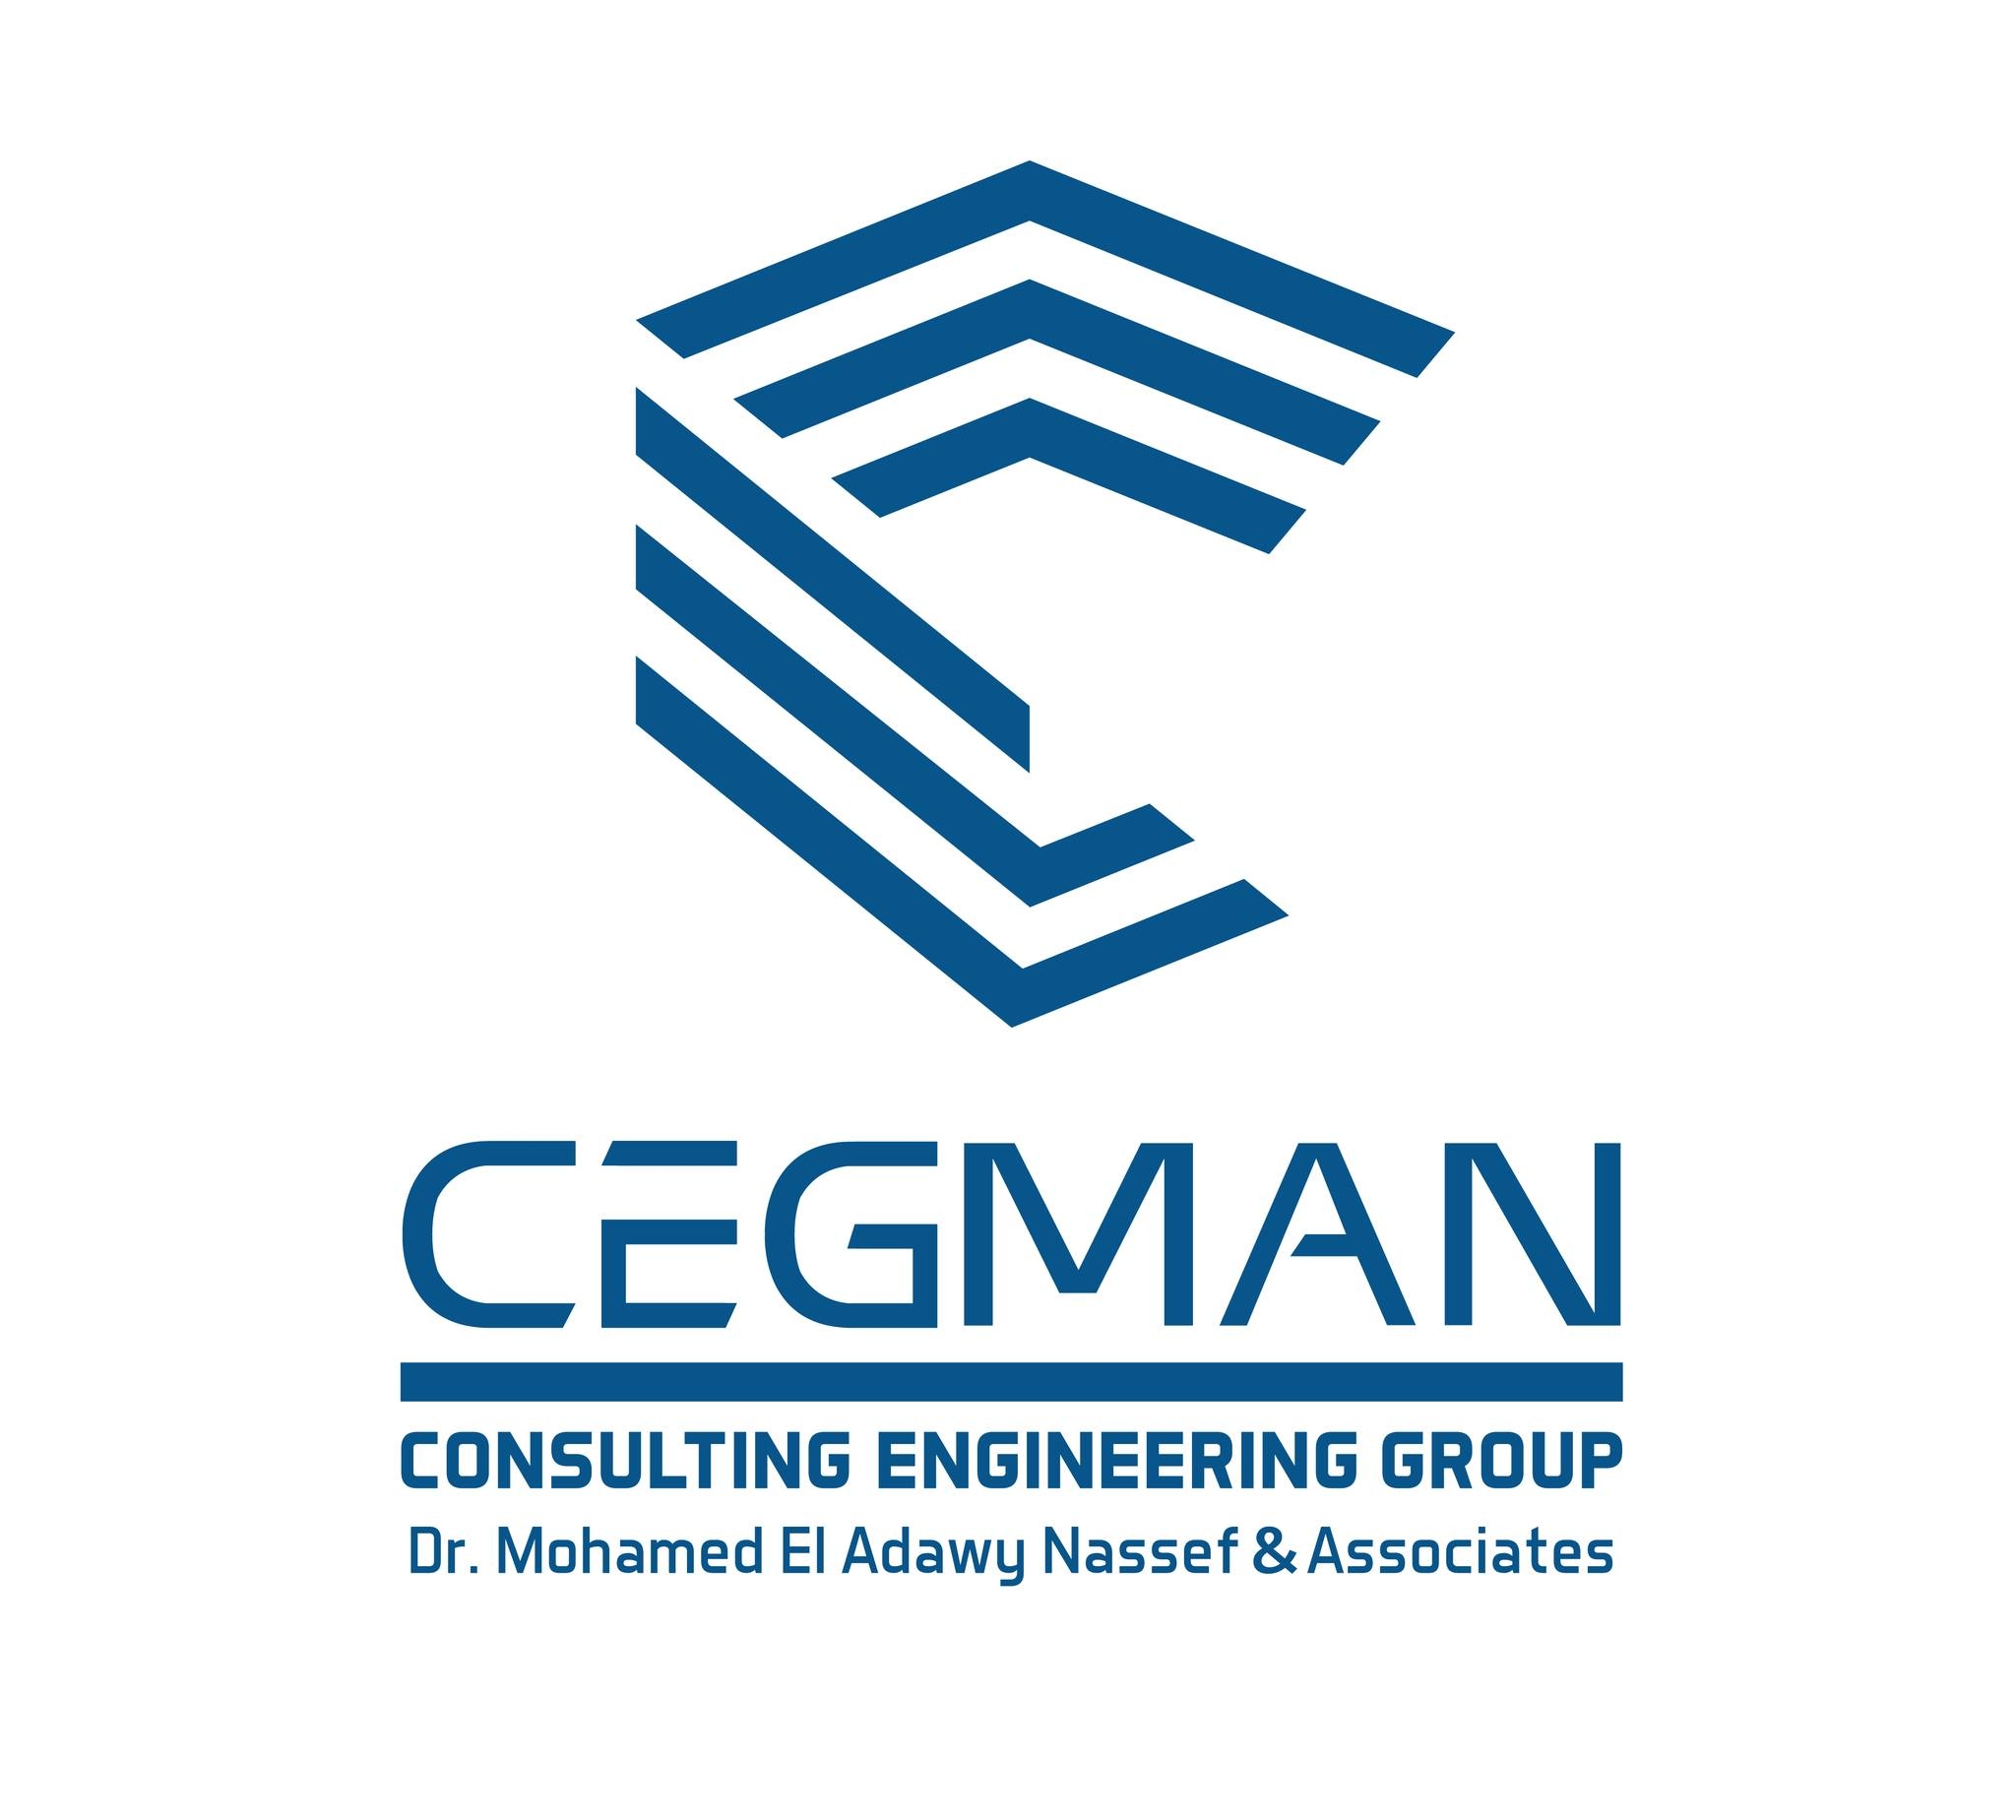 CEGMAN consultant group